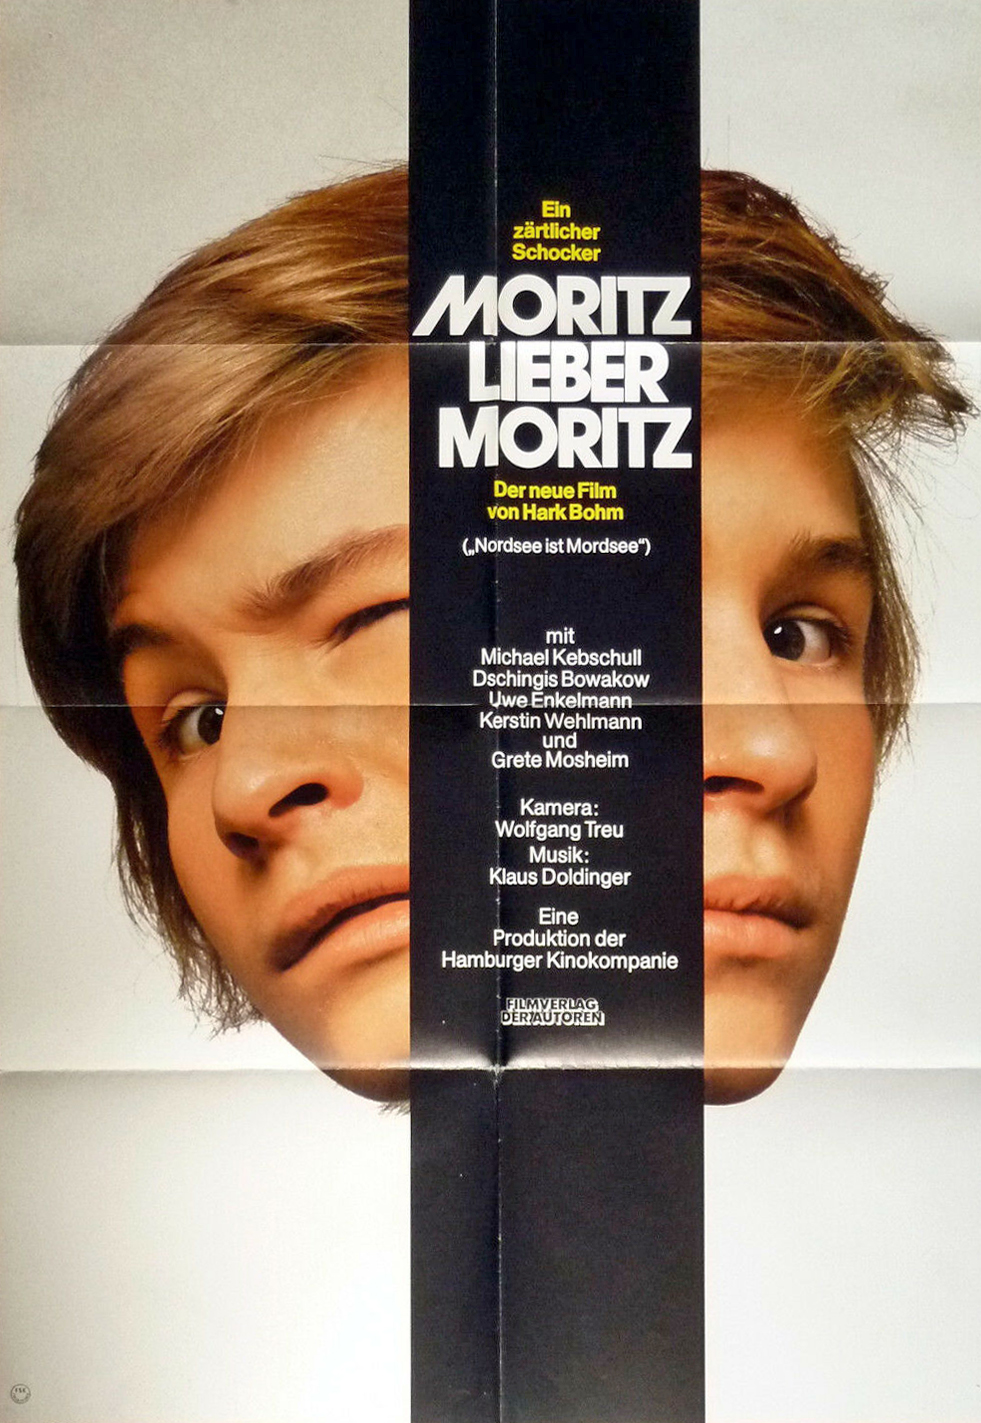 Moritz, Dear Moritz